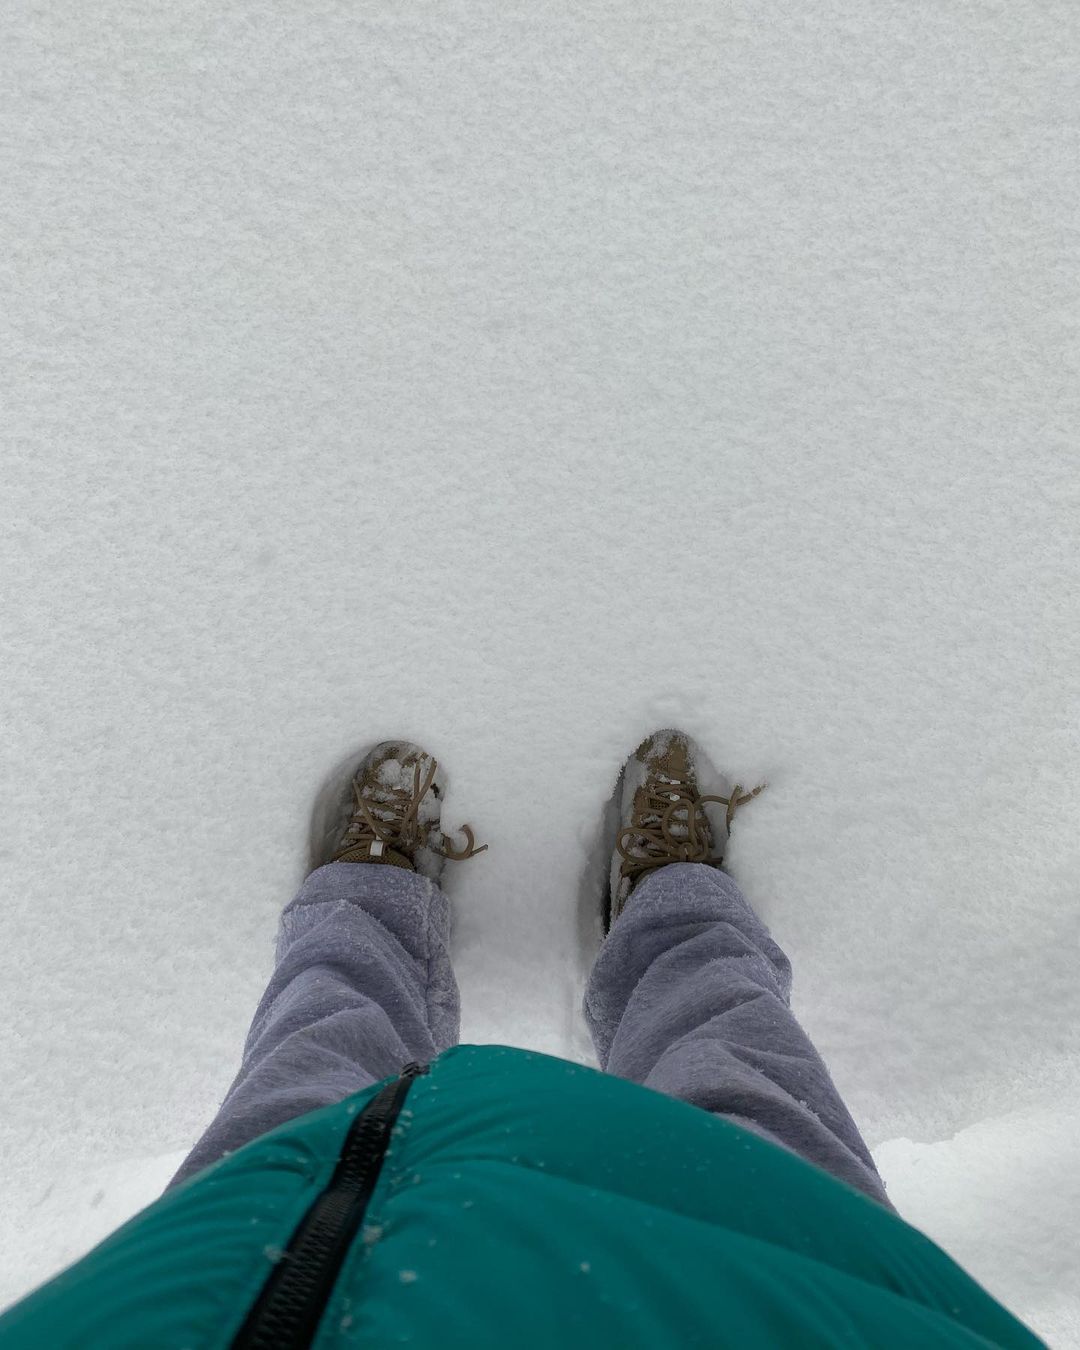 FOTOS Emily Ratajkowski disfruta de un da de nieve! - Photo 1